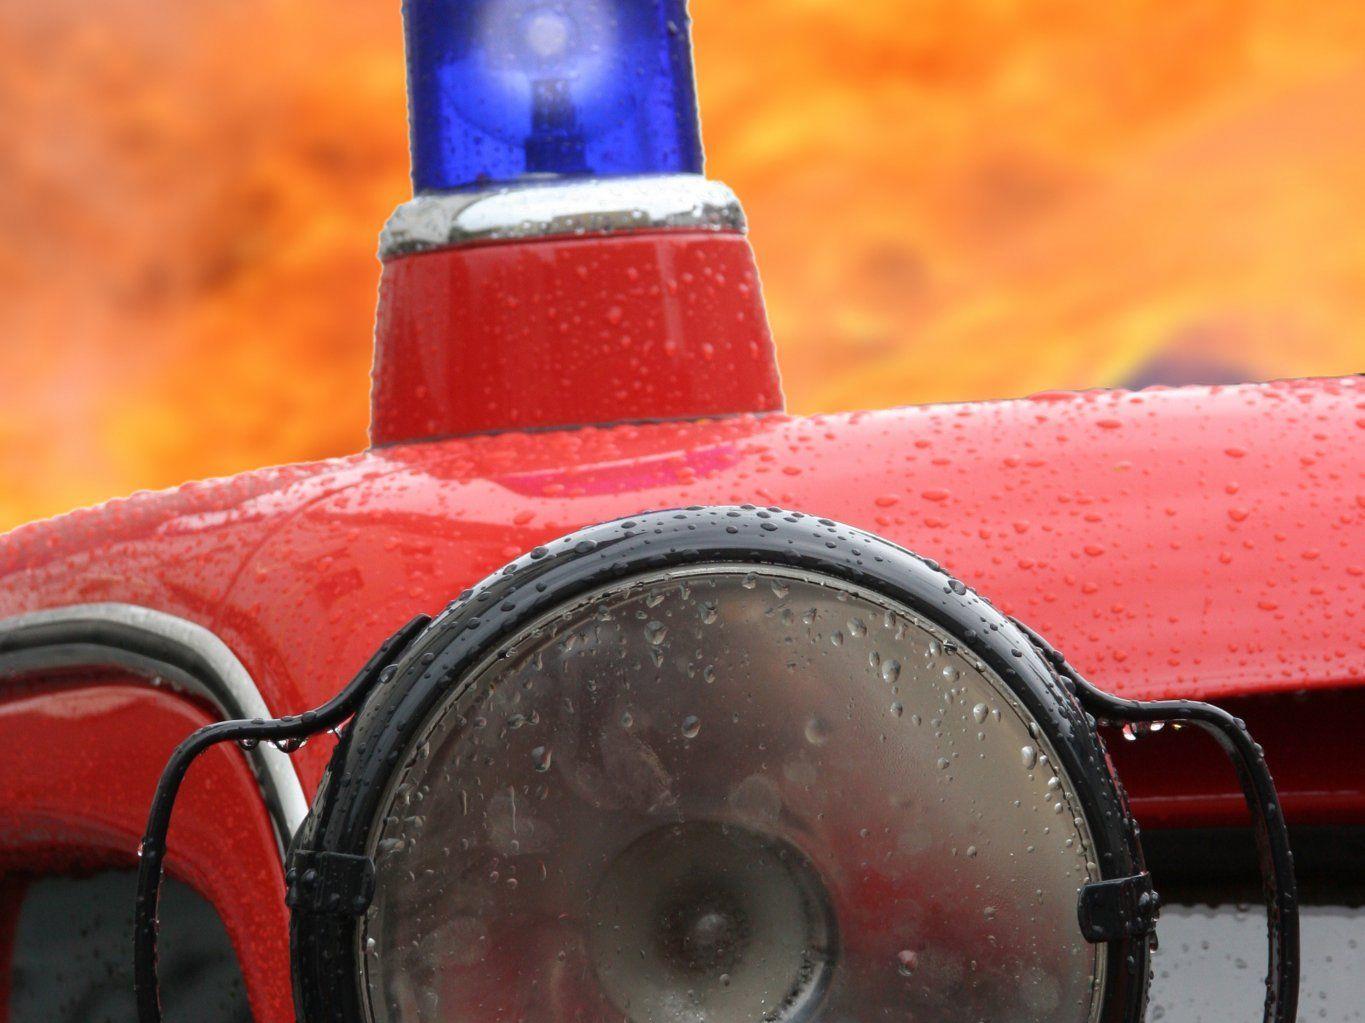 Die Feuerwehr konnte das brennende Fahrzeug schnell löschen.